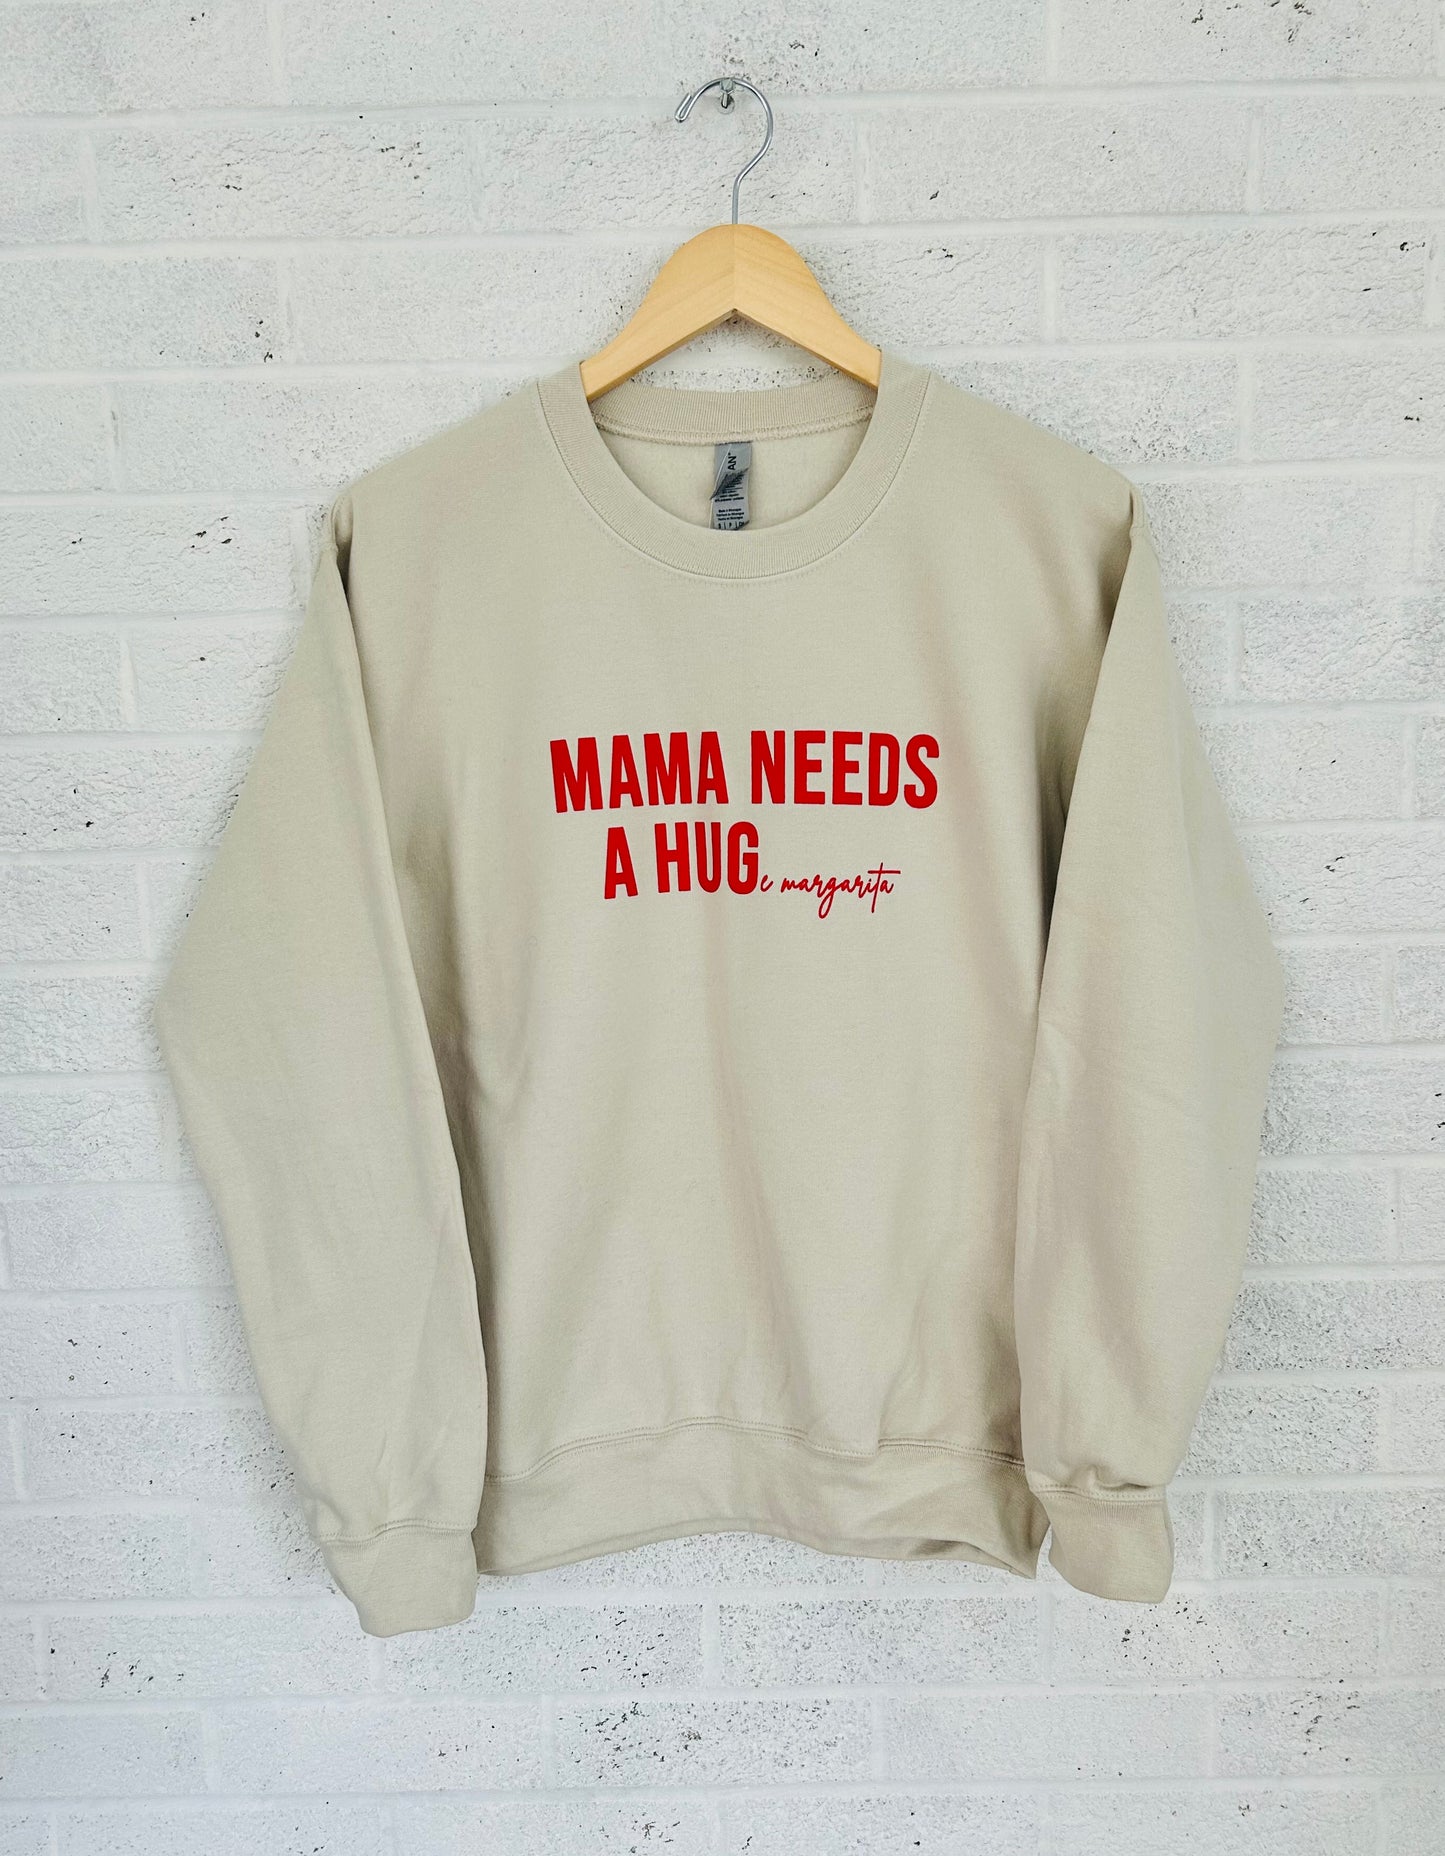 MAMA NEEDS A HUGe margarita Sweatshirt